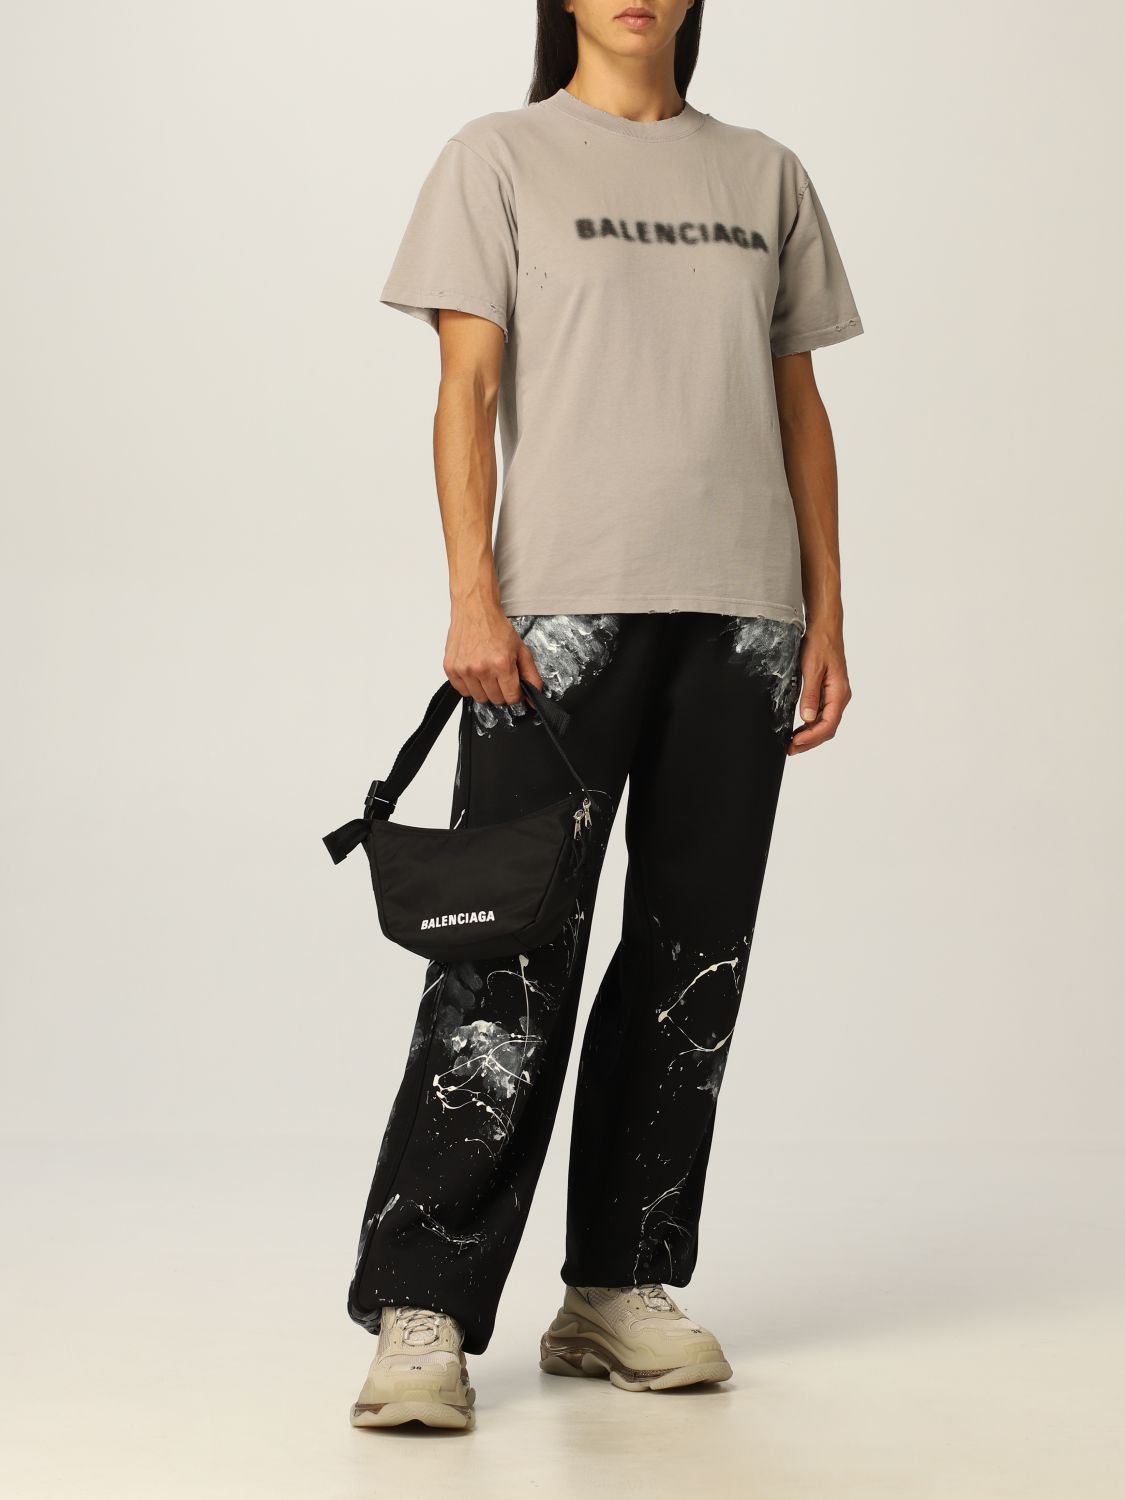 BALENCIAGA: Wheel Sling bag in recycled nylon - Black | Balenciaga